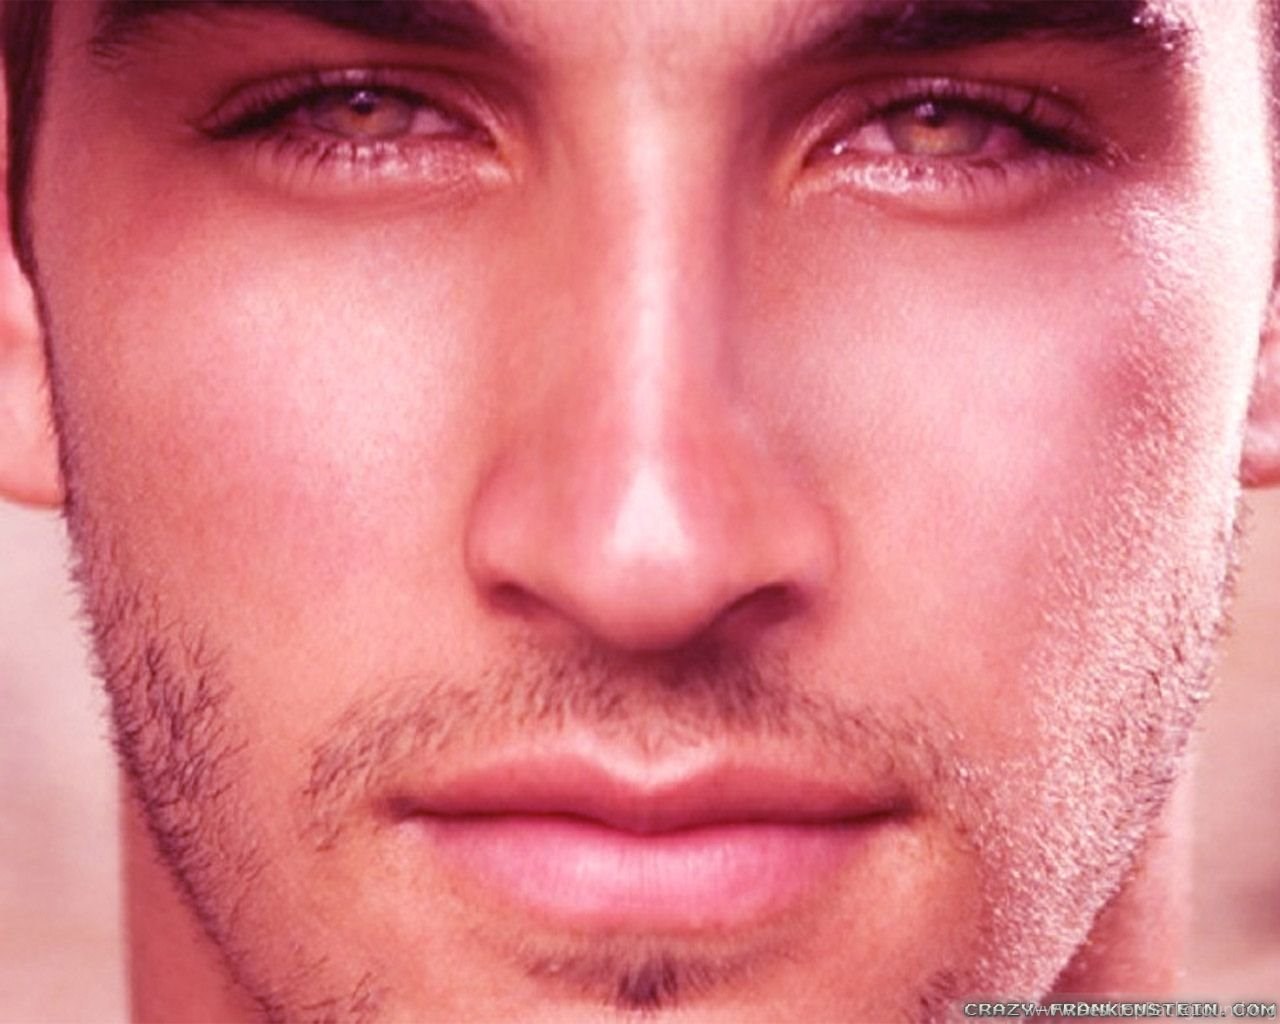 Глаза у федора выразительные взгляд прям суров. Губы мужские. Красивые мужские глаза. Выразительные глаза у мужчин. Красивое мужское лицо.